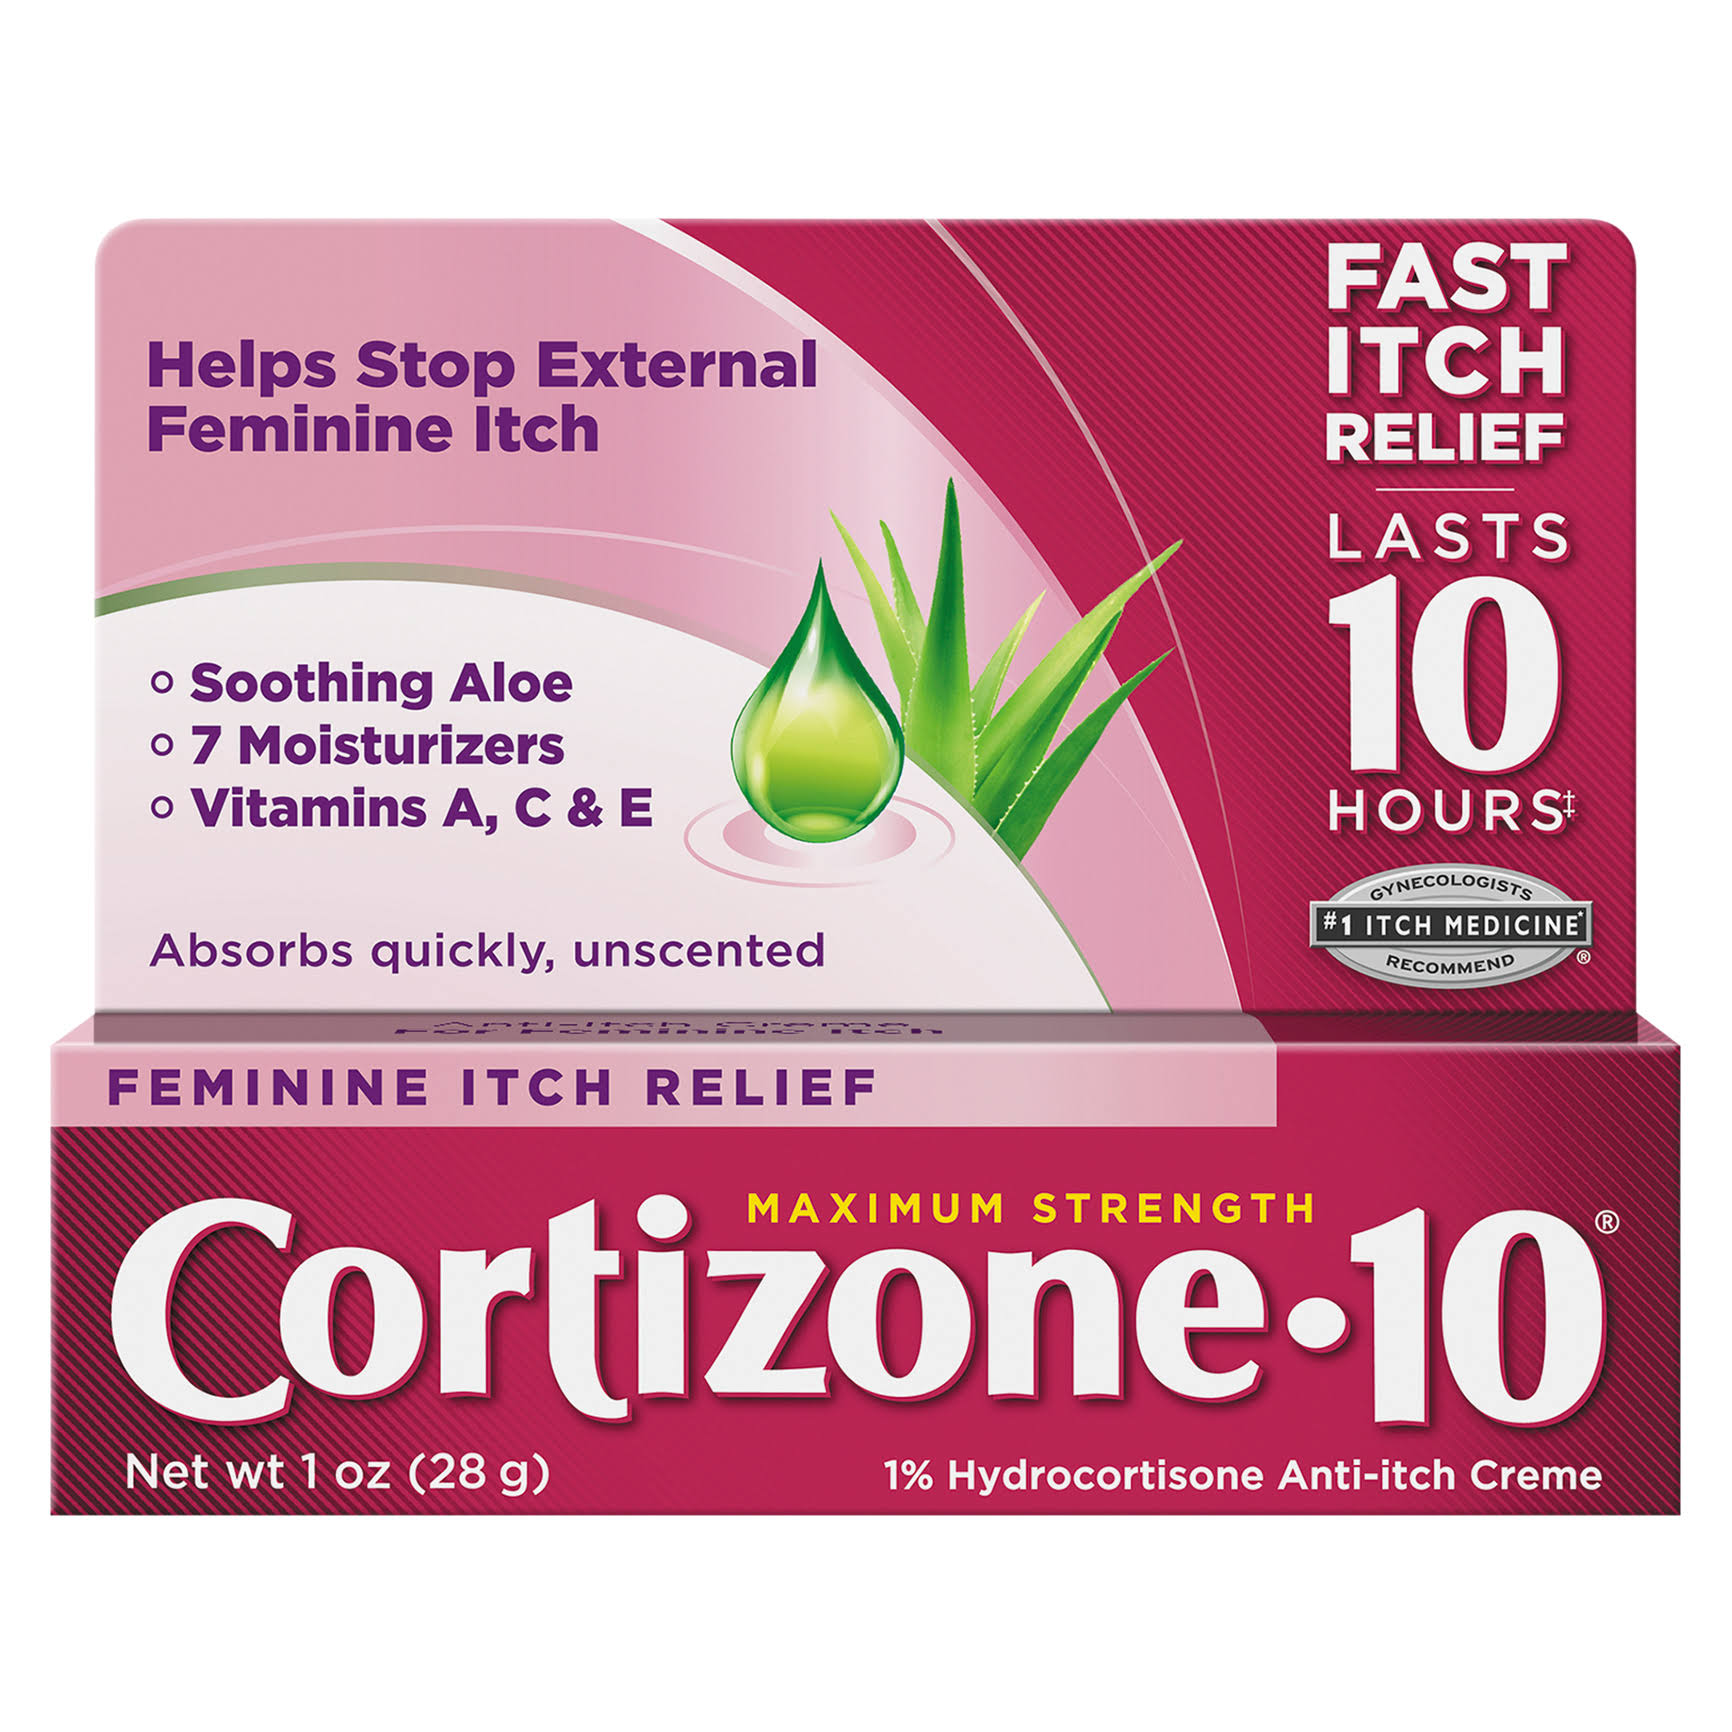 Cortizone-10 Maximum Strength Feminine Relief Anti-Itch Creme - 1oz